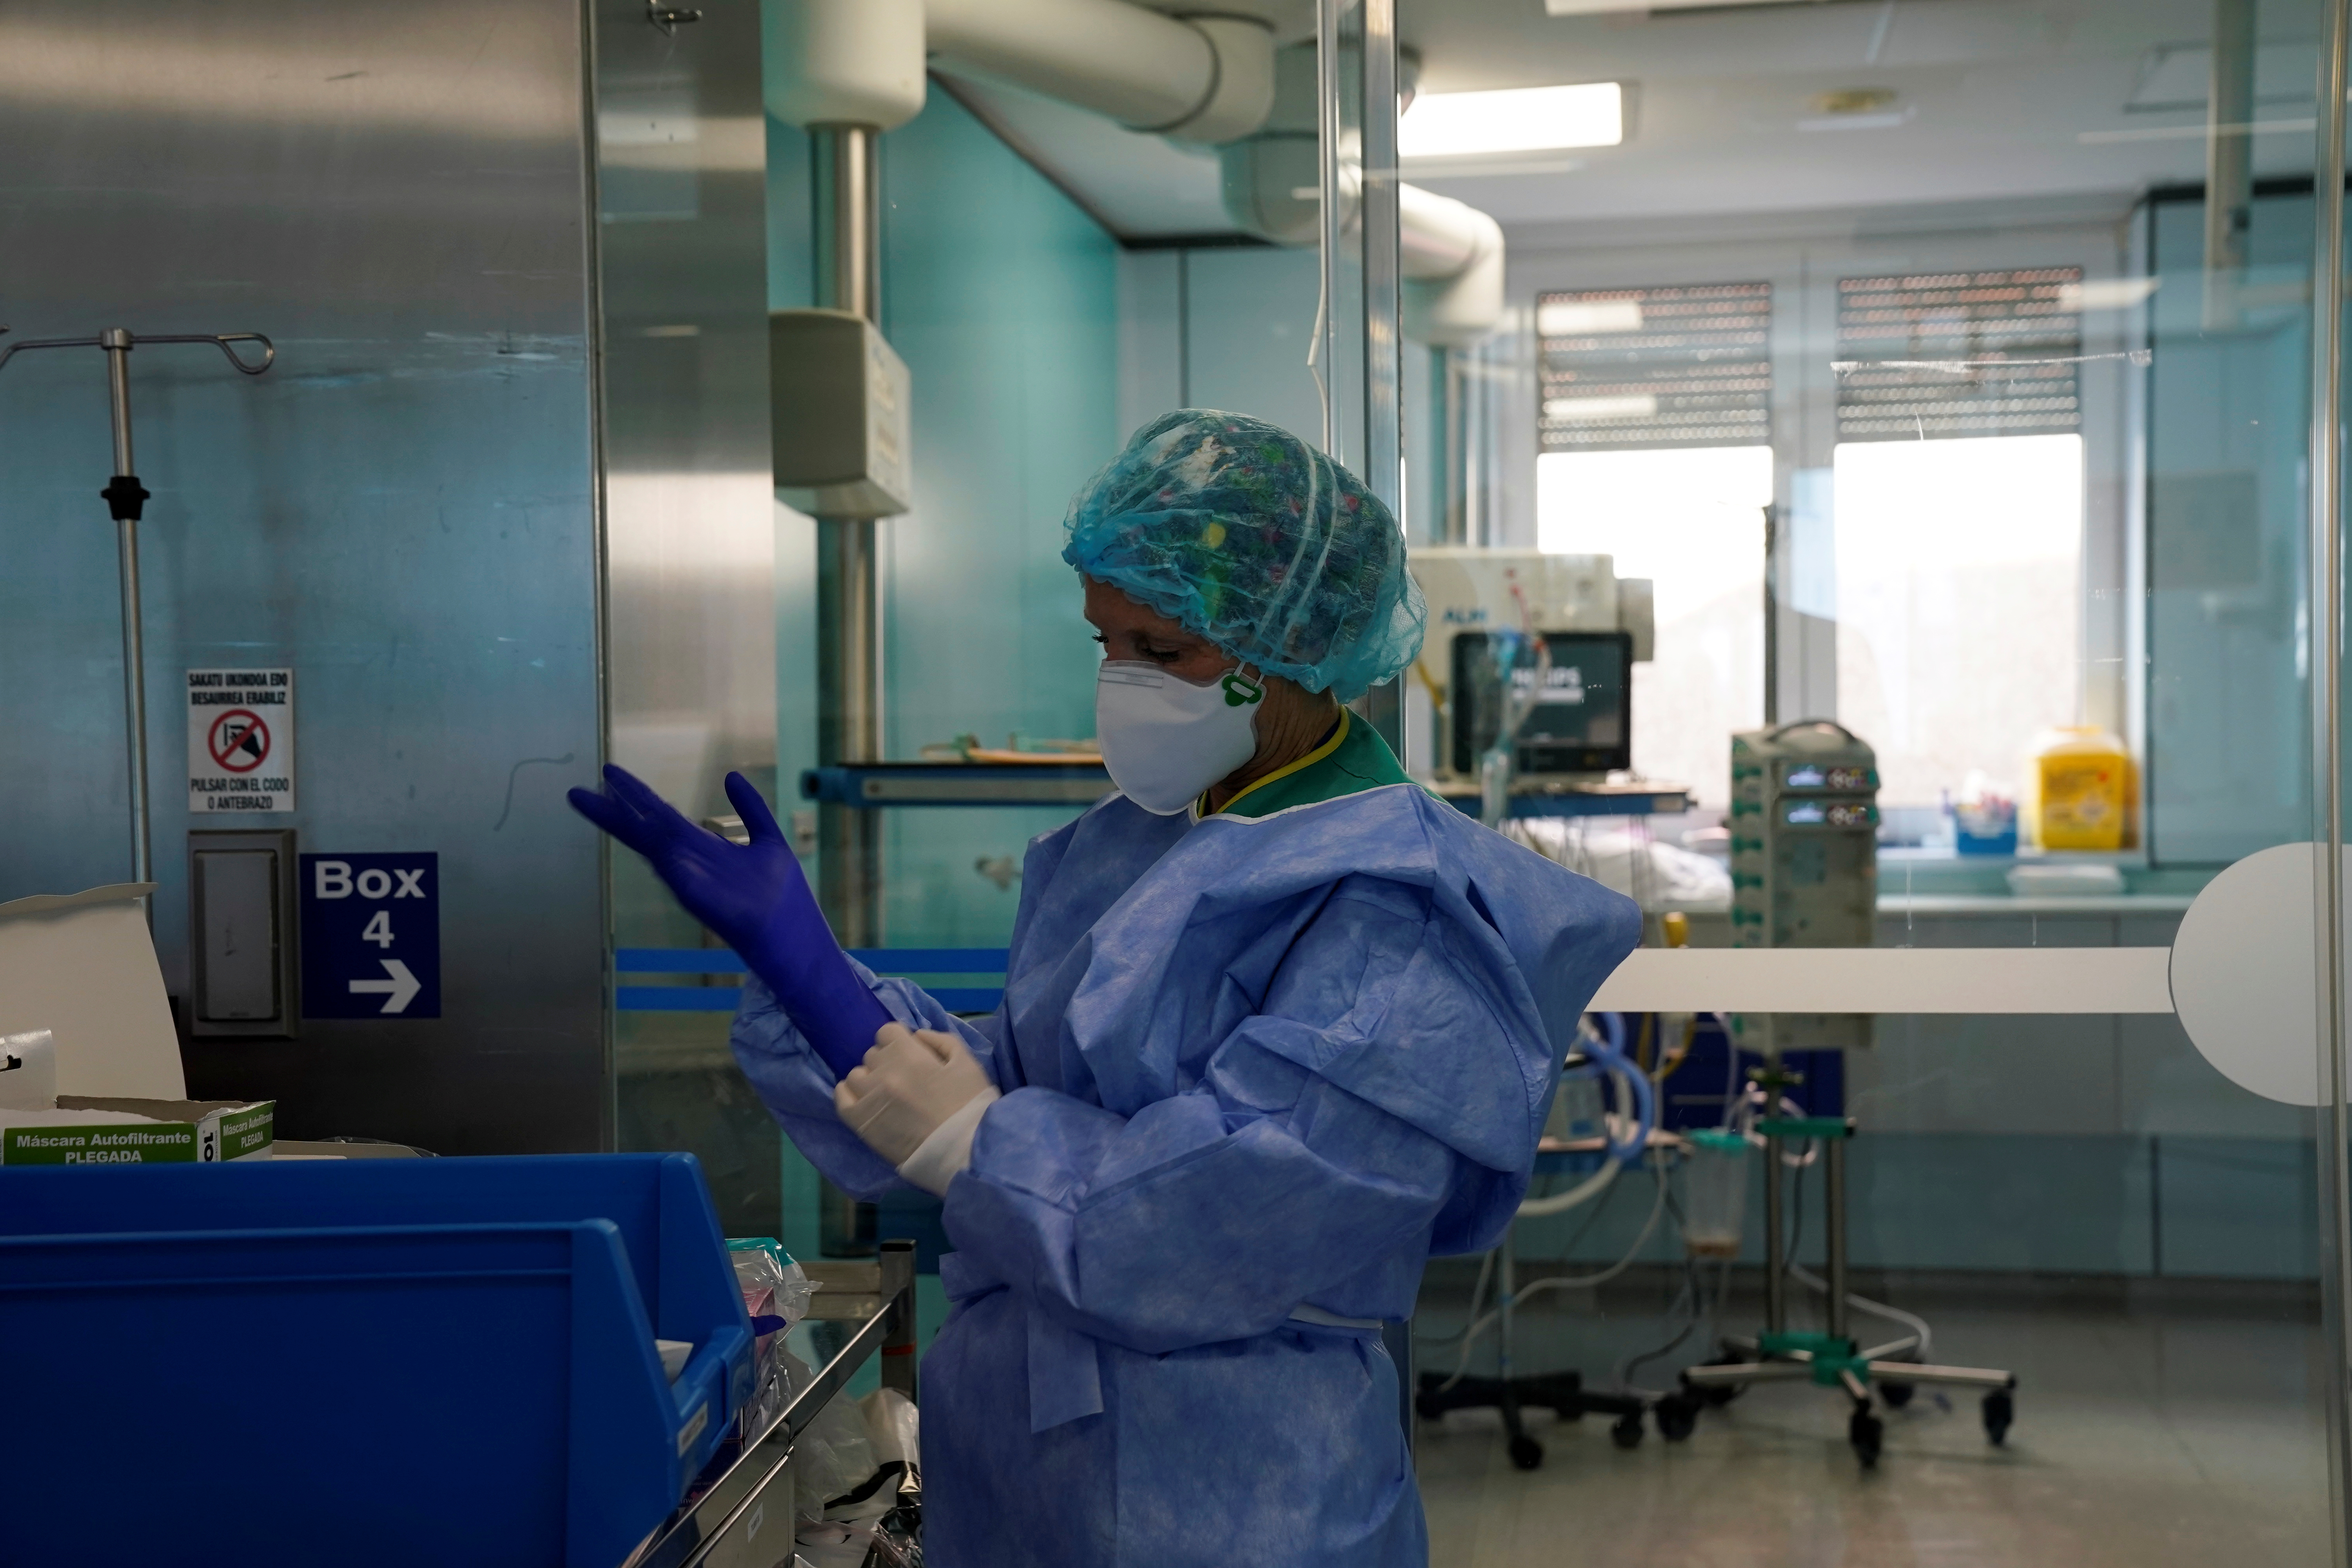 Una enfermera se prepara para atender a un paciente en la sala de cuidados intensivos de del hospital Cruces de Barakaldo, España (REUTERS/Vincent West)